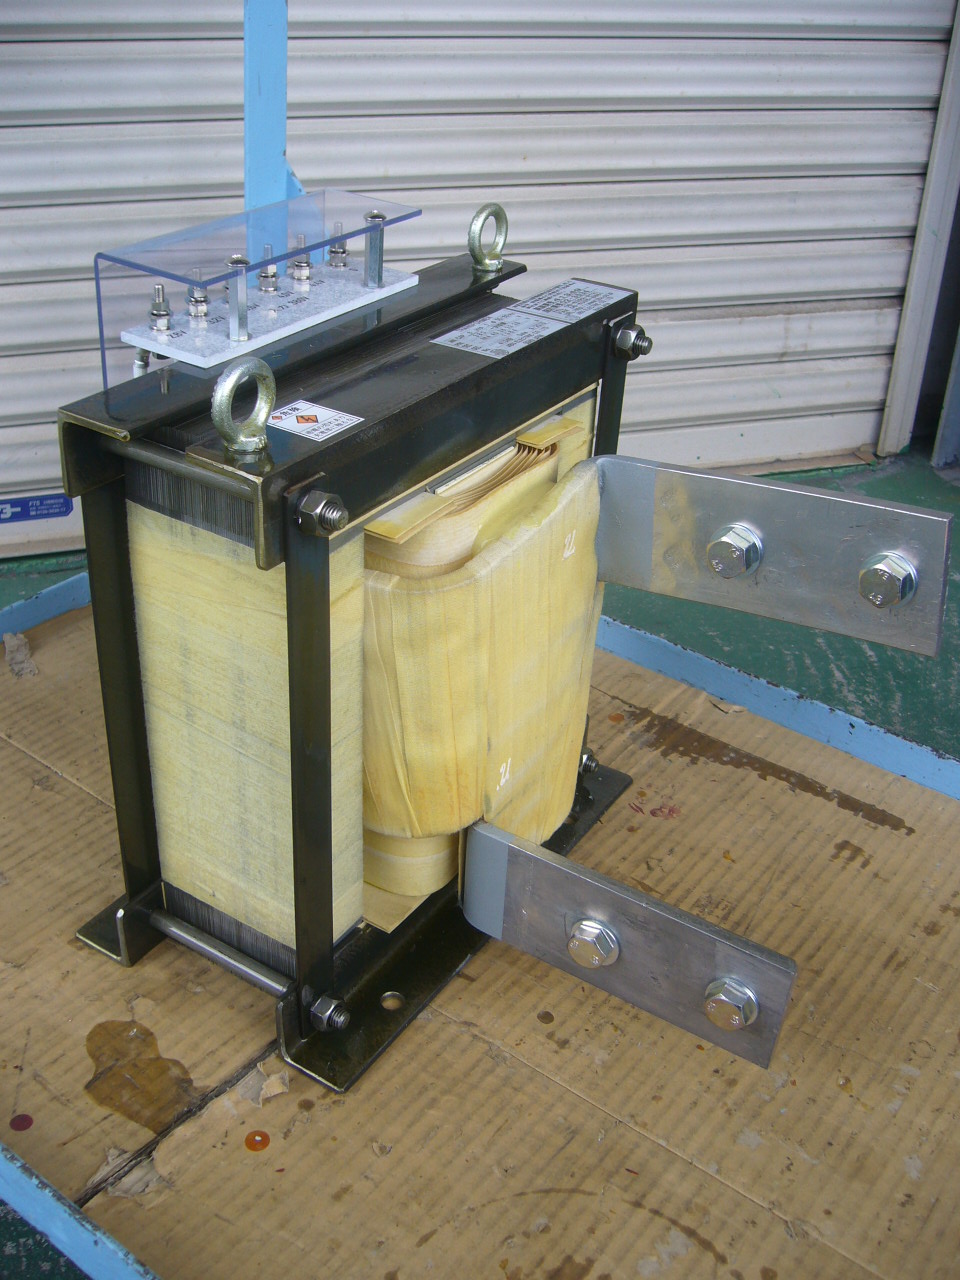 リチウム電池の製造で使われている電源トランス（大電流発生変圧器）